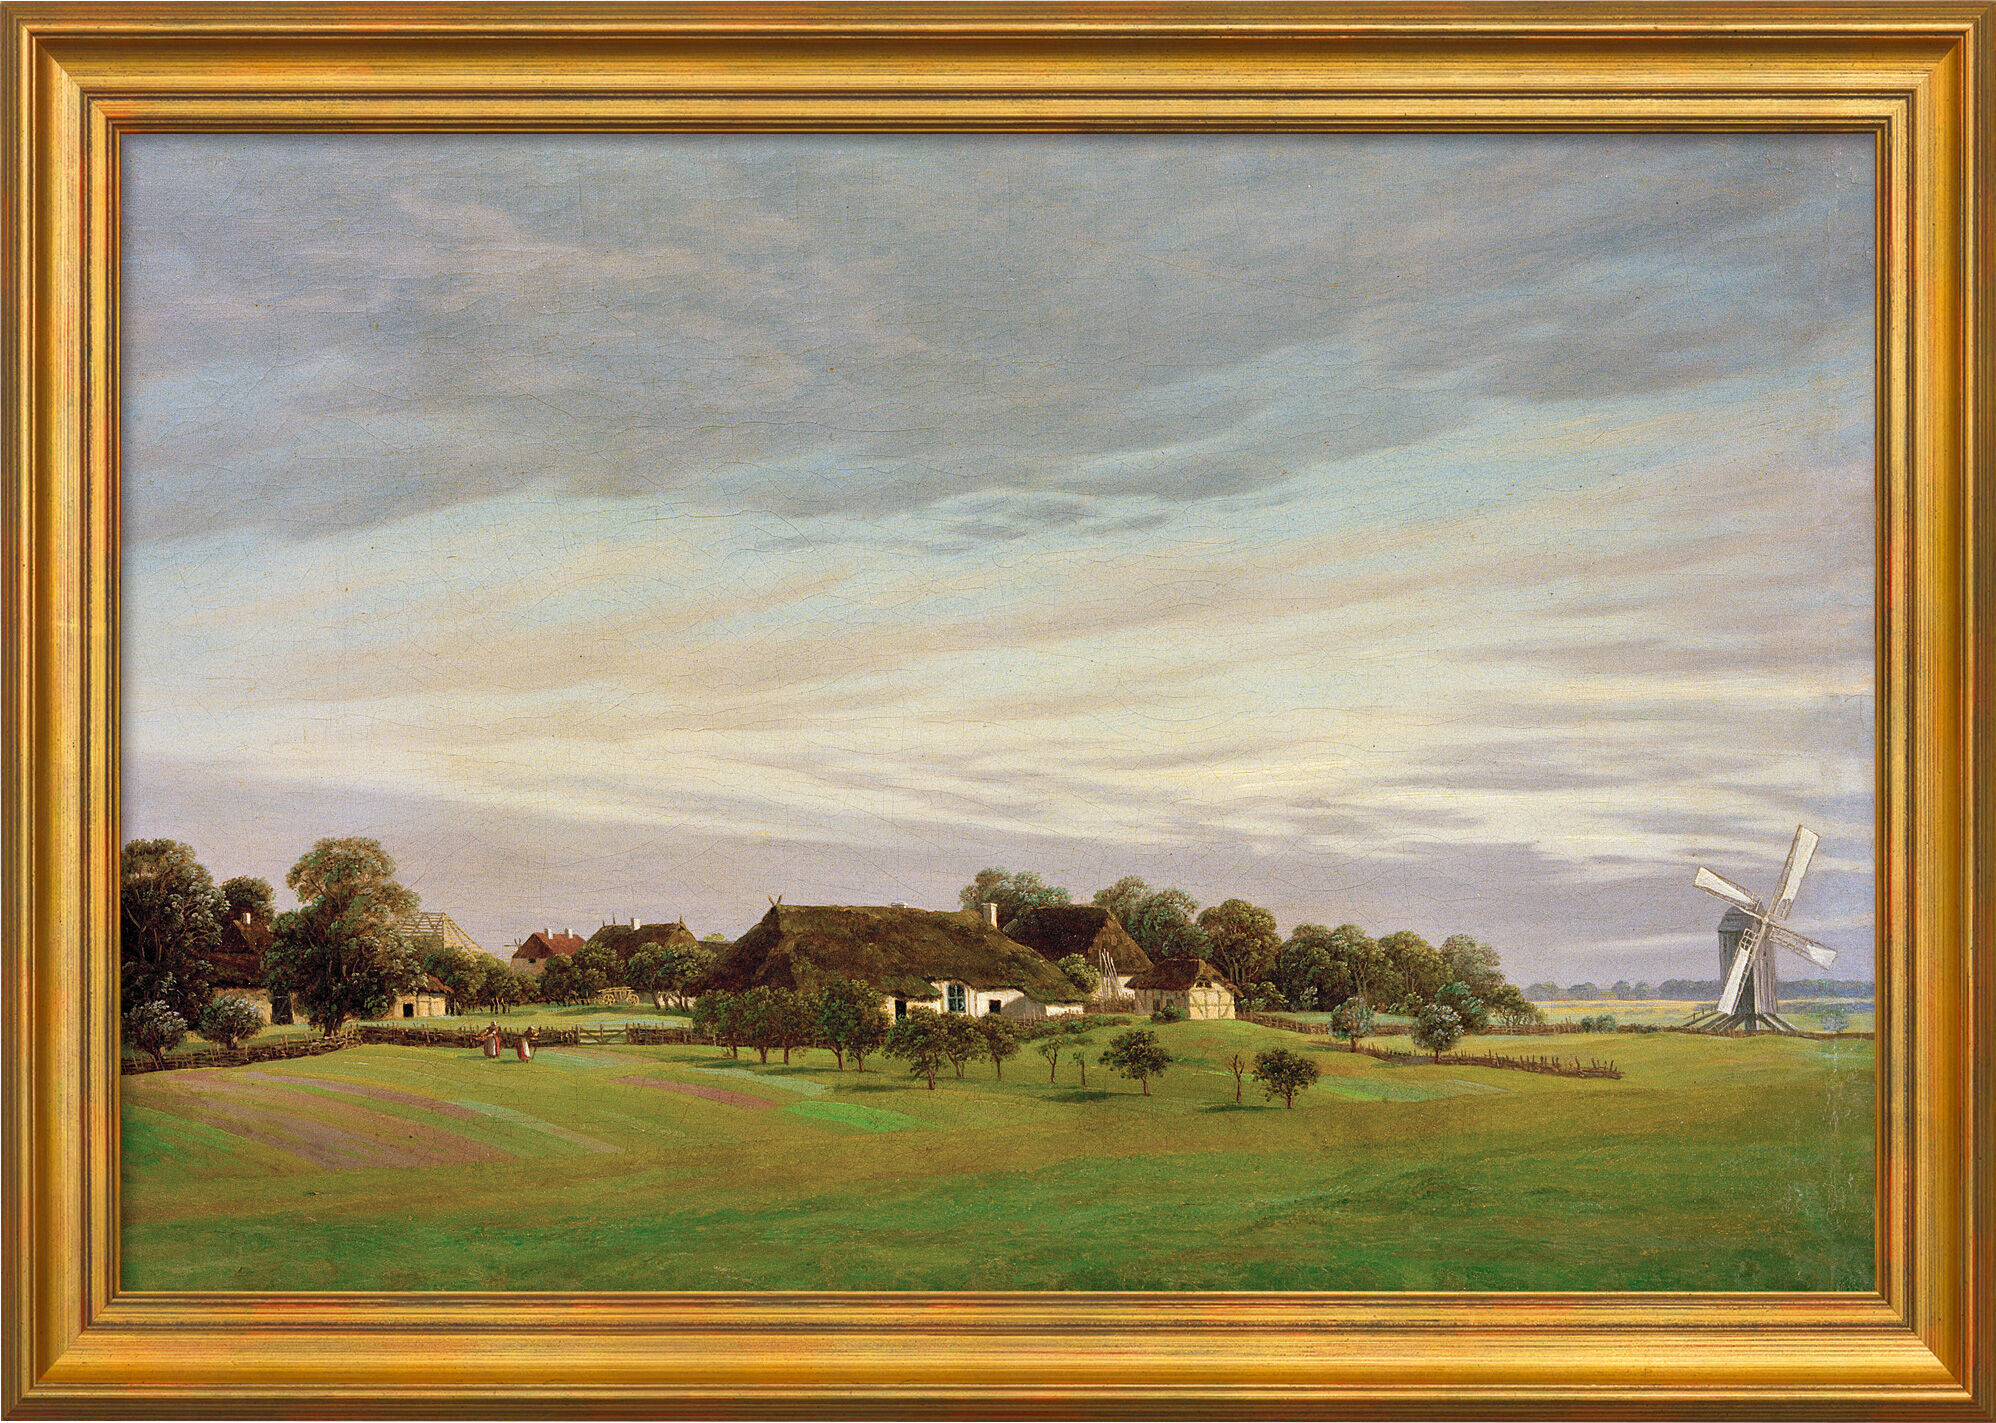 Beeld "Flat Countryside" (ca. 1822/23), ingelijst von Caspar David Friedrich